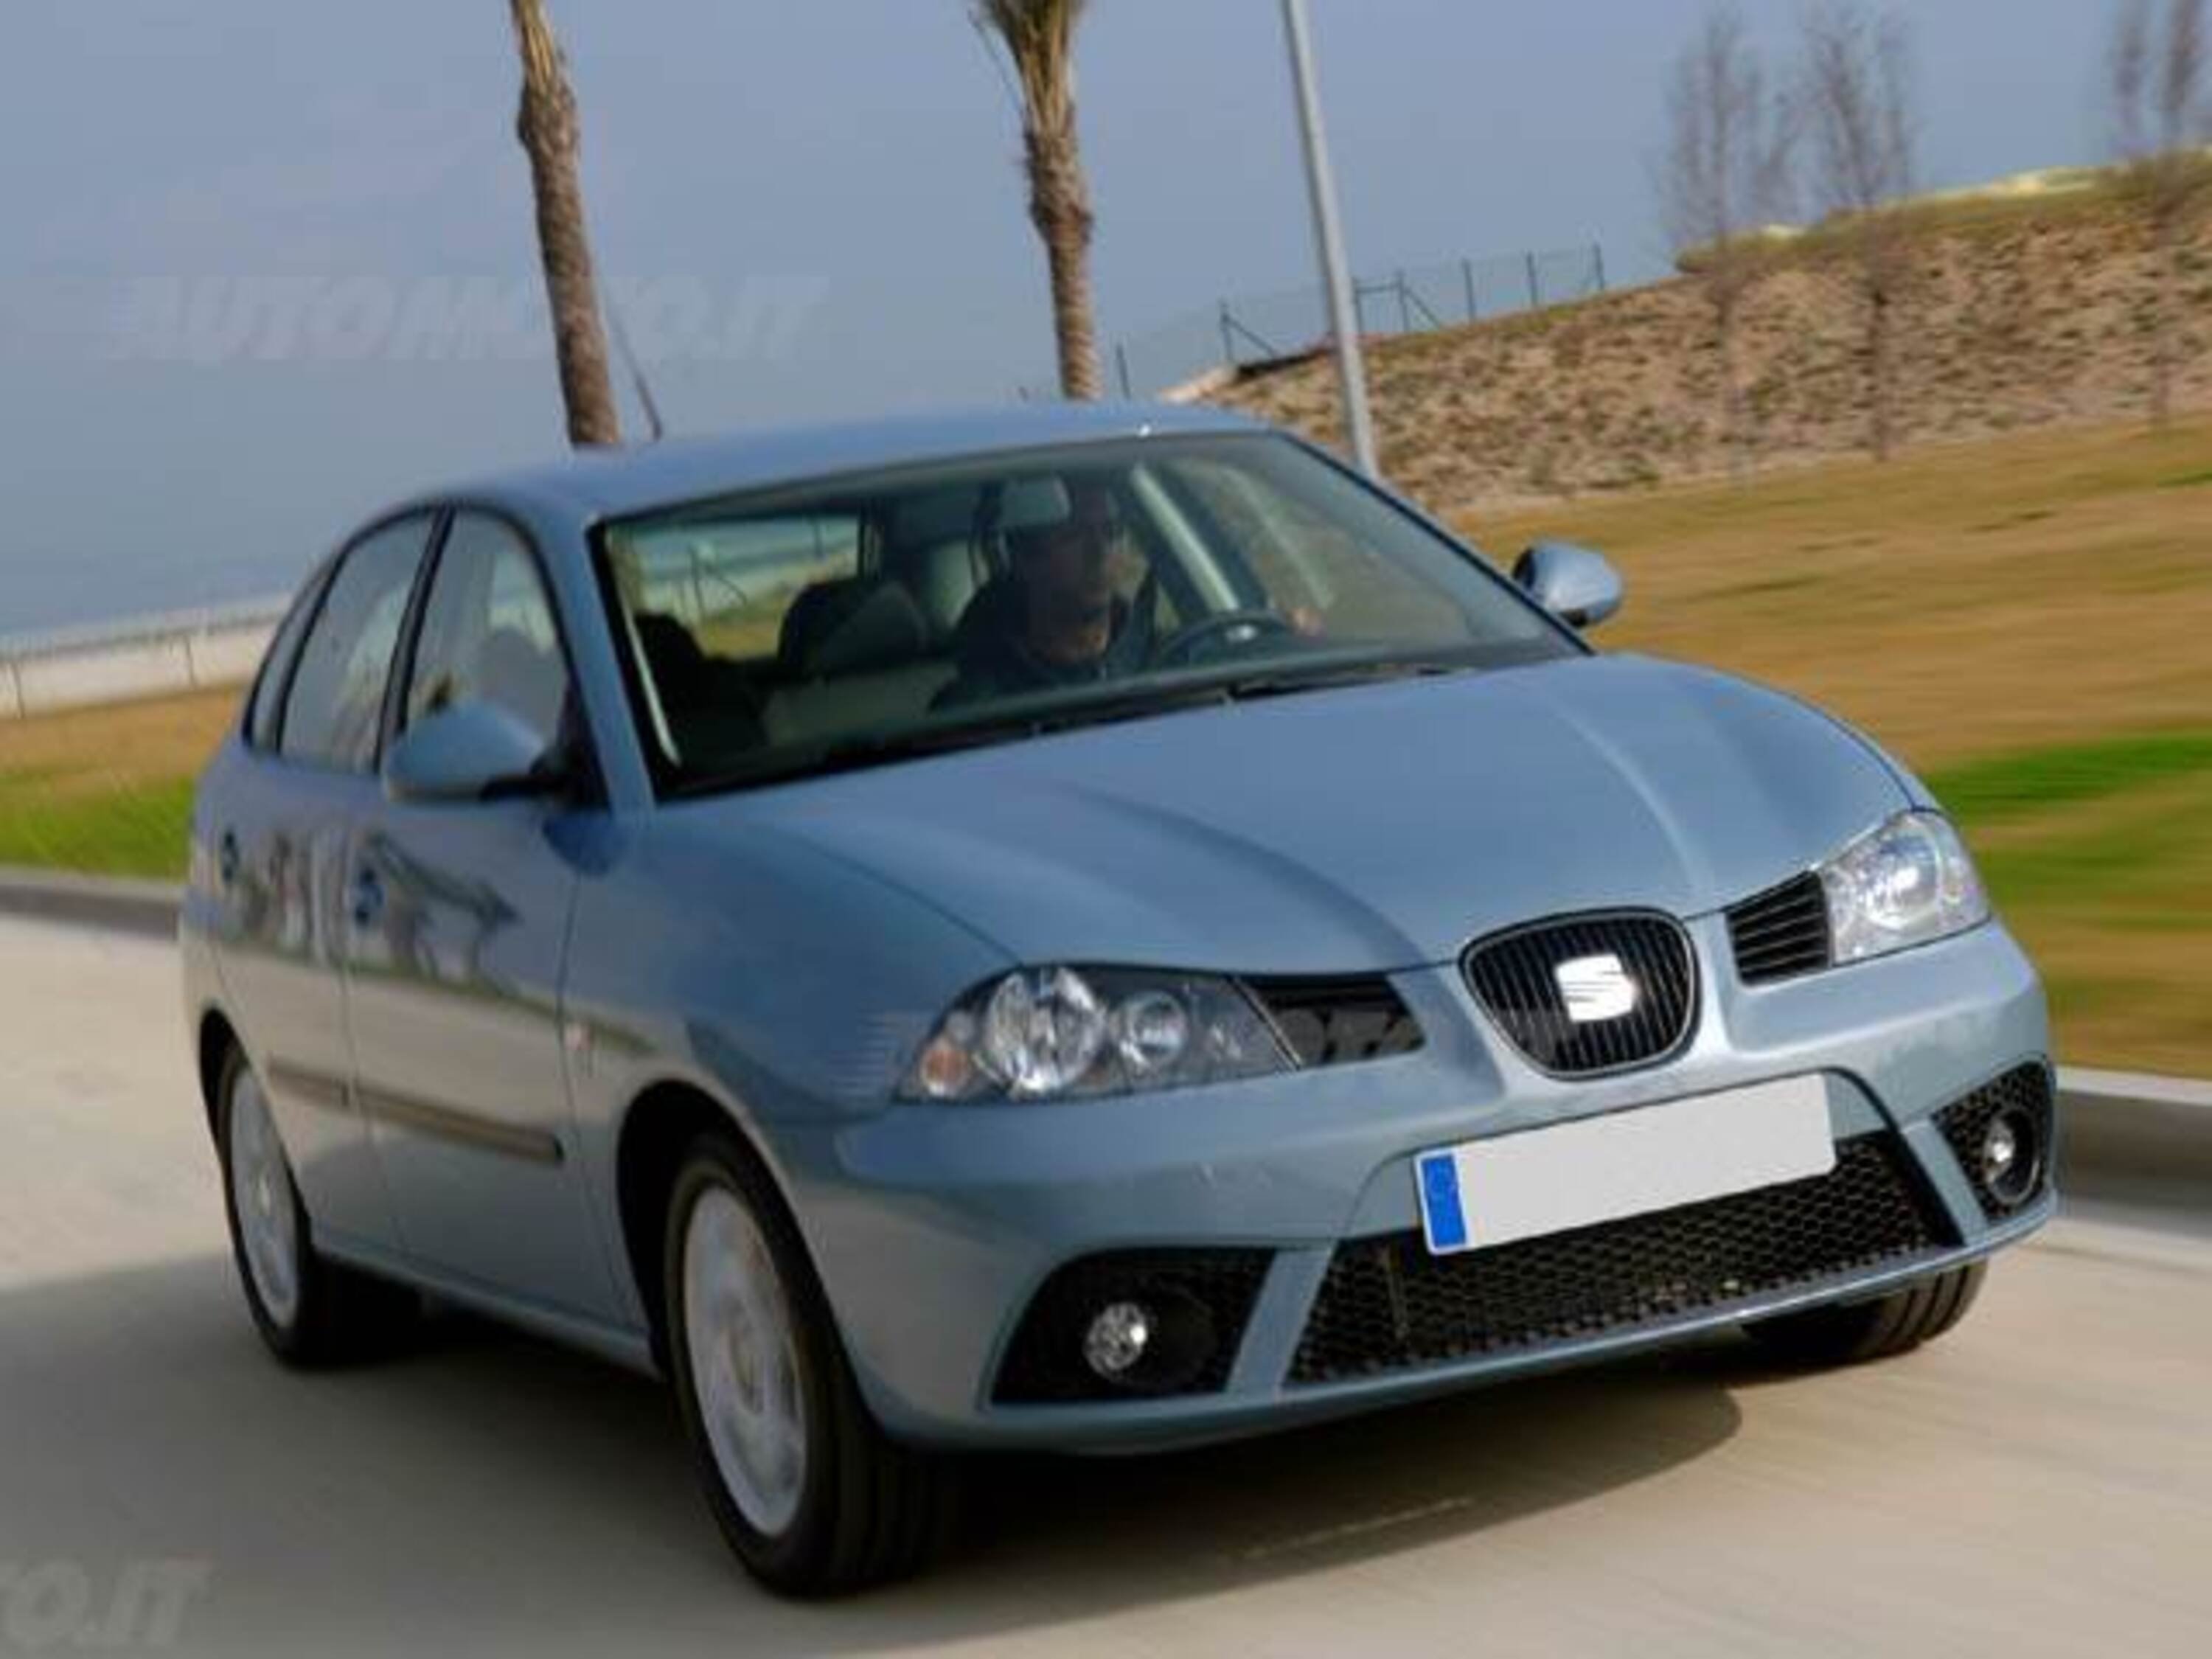 SEAT Ibiza 1.4 TDI 69CV 5p. Reference my 07